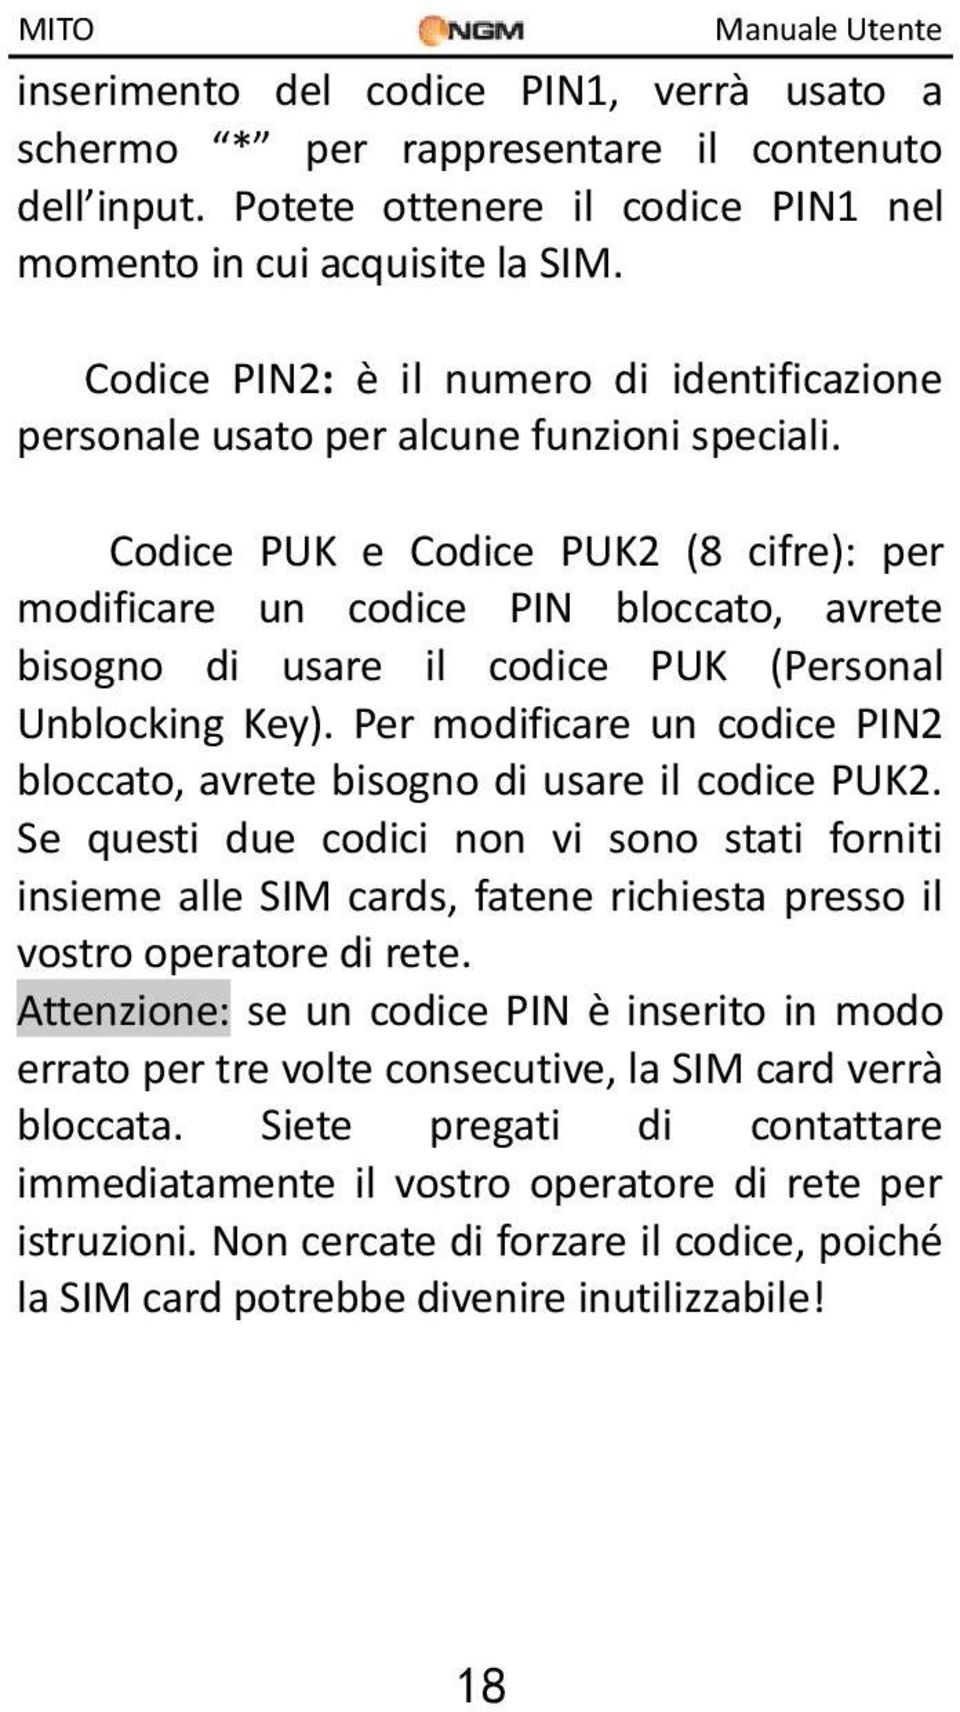 Codice PUK e Codice PUK2 (8 cifre): per modificare un codice PIN bloccato, avrete bisogno di usare il codice PUK (Personal Unblocking Key).